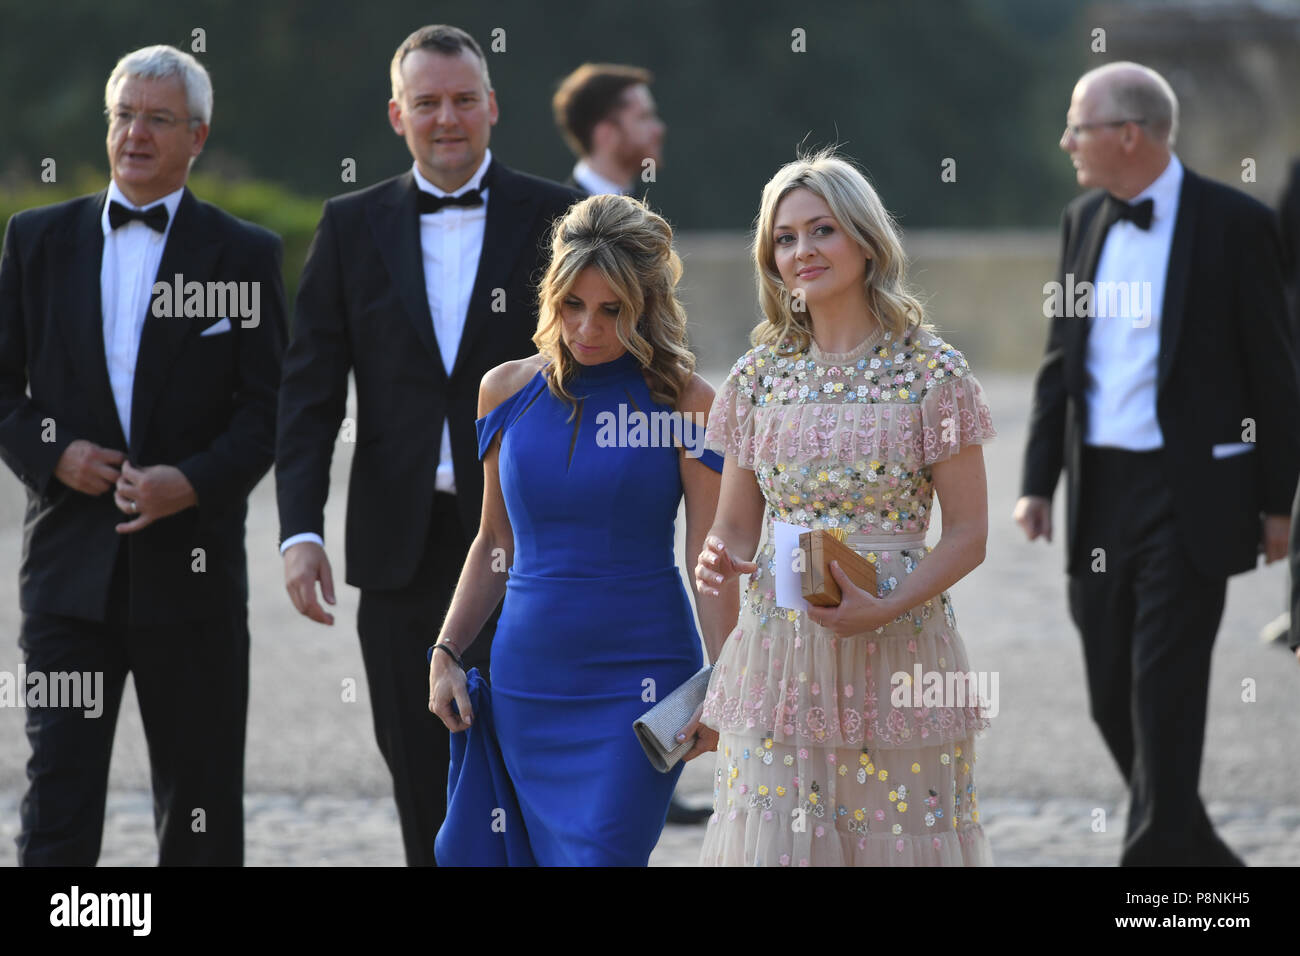 Die Menschen vor der Ankunft von US-Präsident Donald Trump at Blenheim Palace, Oxfordshire, für ein Abendessen auf Einladung von Premierminister Theresa May zu erwarten, als Teil seines Besuchs in Großbritannien. Stockfoto